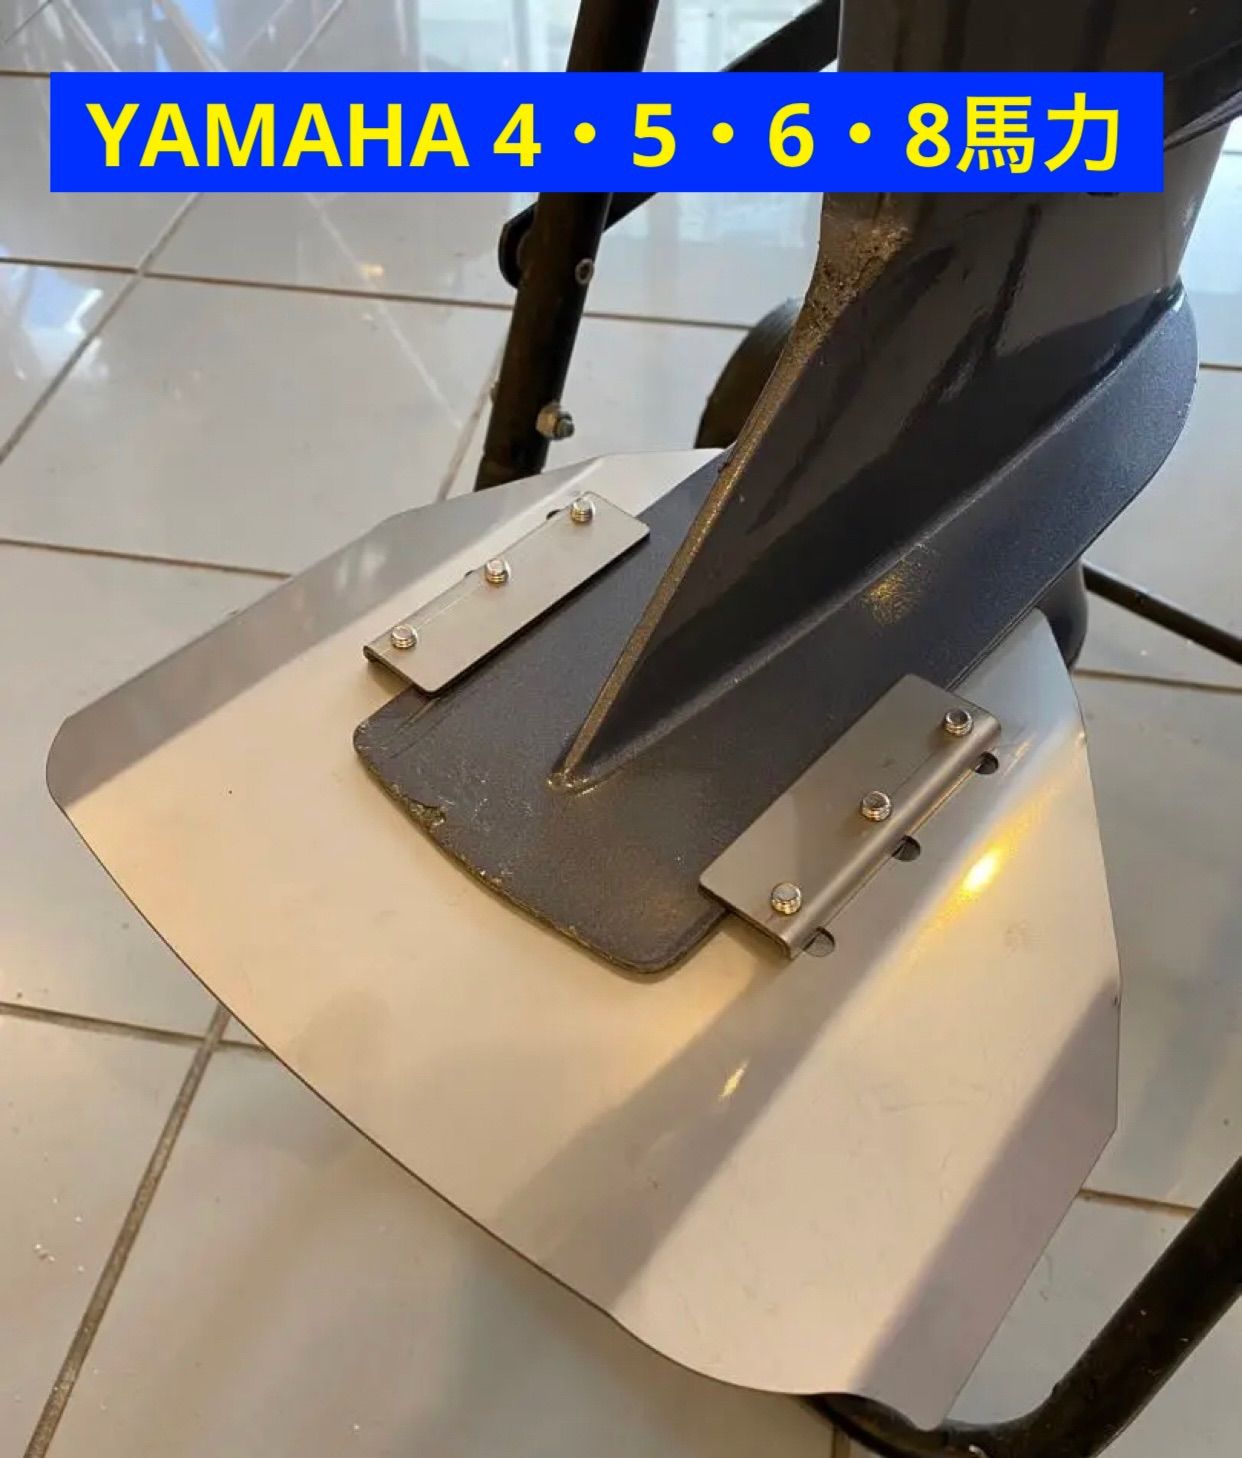 YAMAHA ヤマハ 4馬力 5馬力 6馬力 8馬力 船外機用スタビライザー 